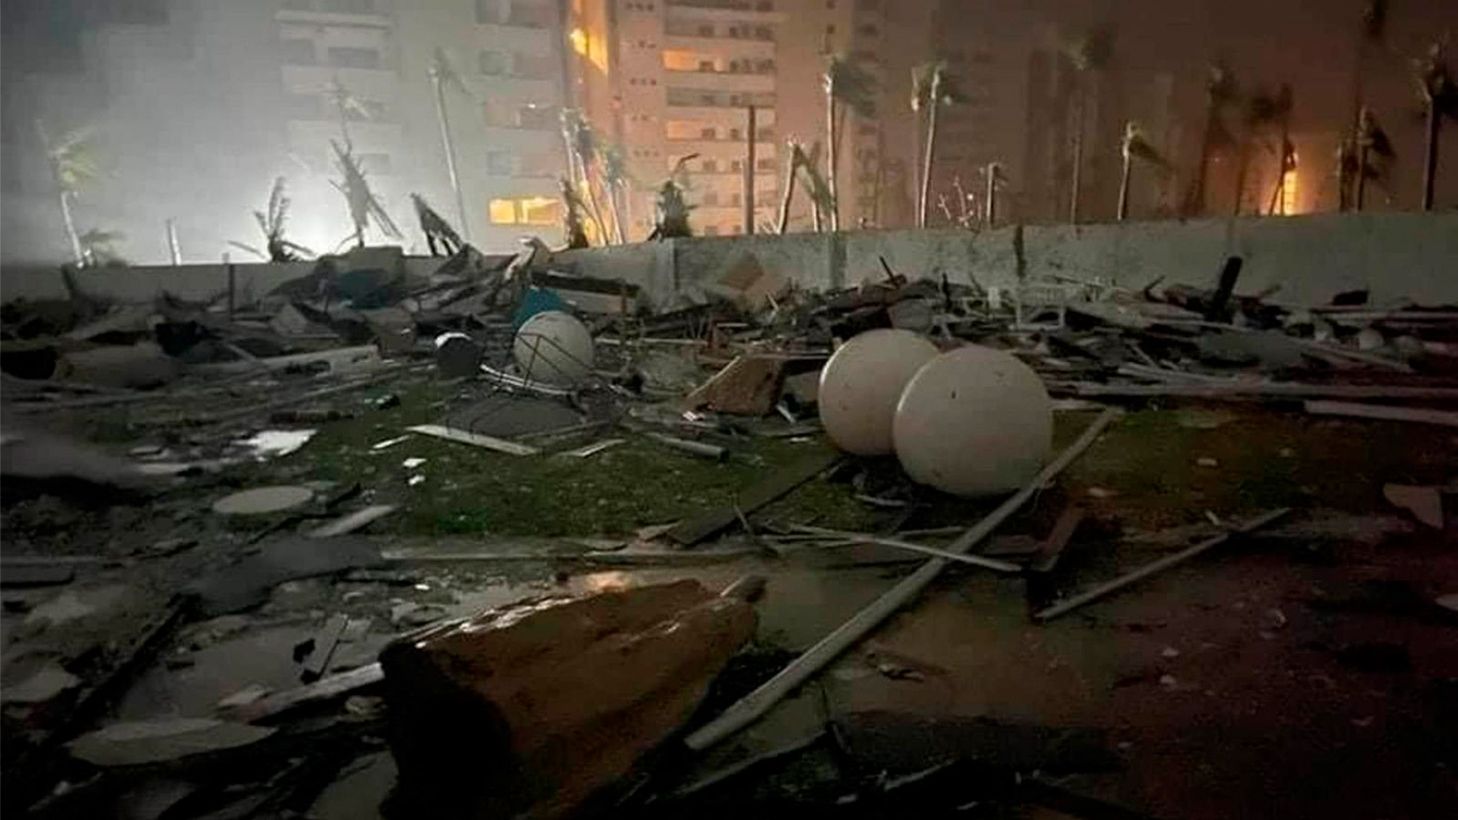 La imagen muestra una escena de destrucción nocturna con escombros y esferas blancas